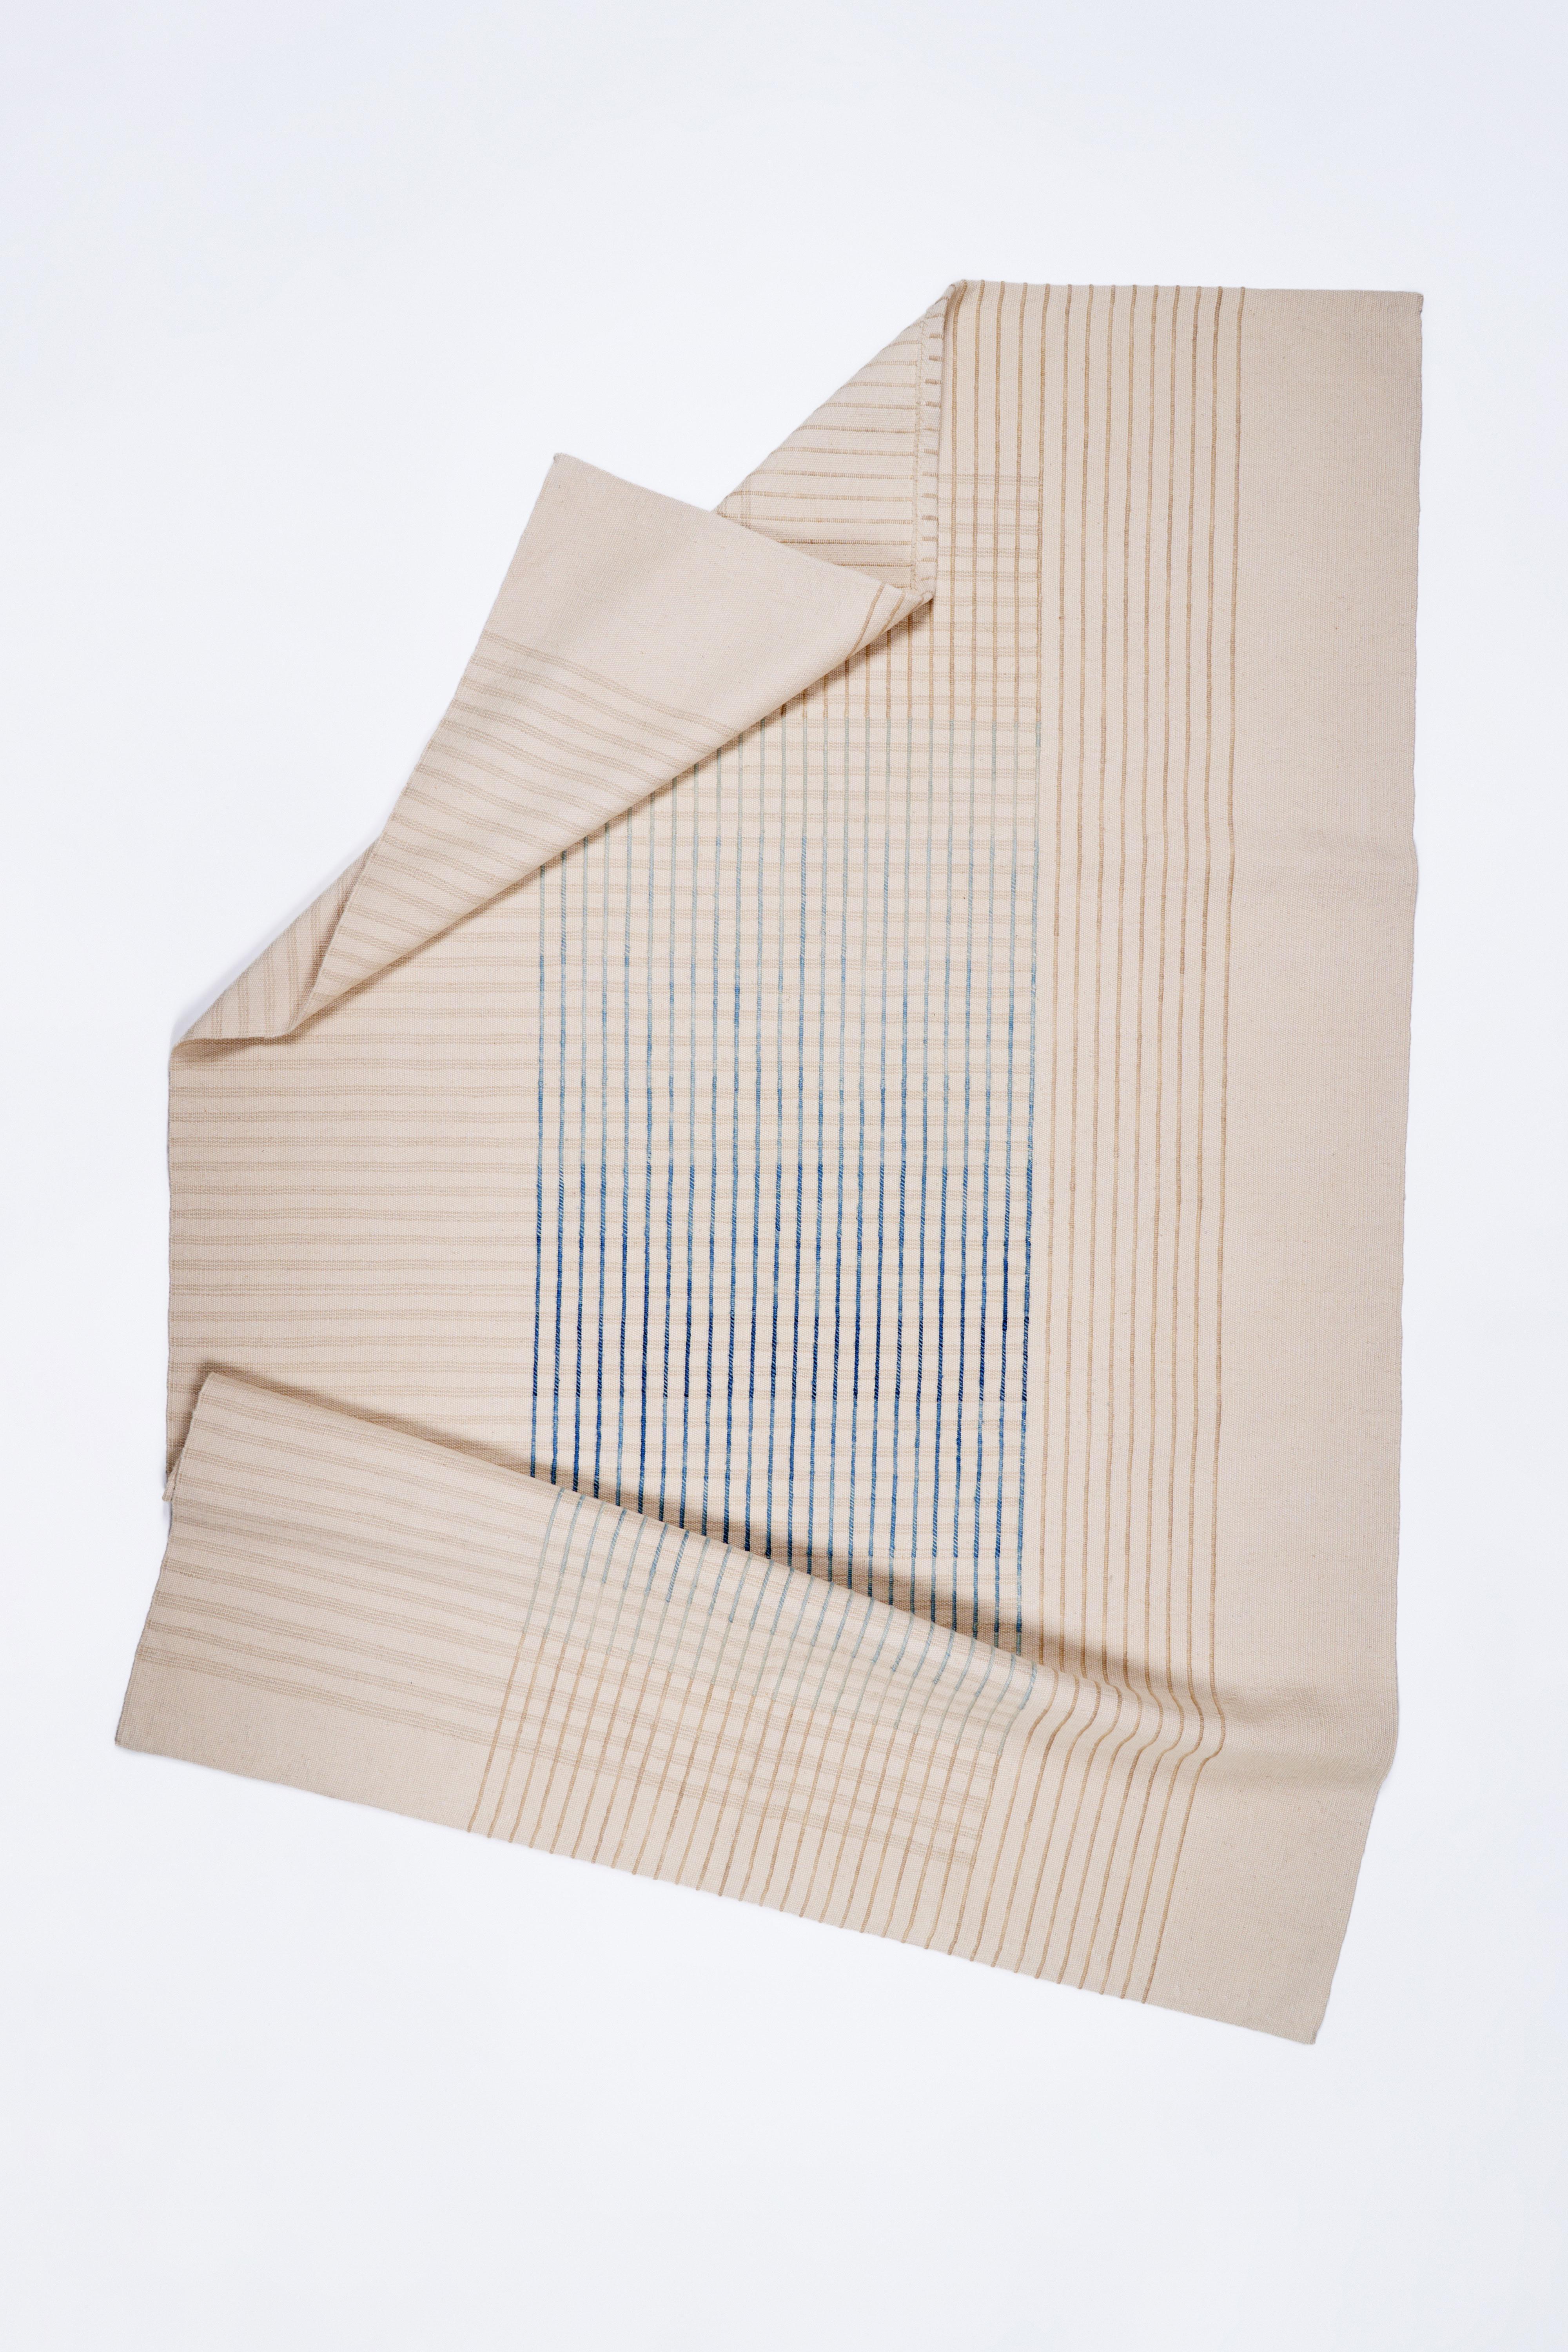 Inspirée par les lignes délicates d'Agnes Martin et la philosophie japonaise du Ma, la collection de tapis contemporains tissés à la main AGNES dégage un sentiment de simplicité et d'élégance. Son design minimal invite à la contemplation et à la